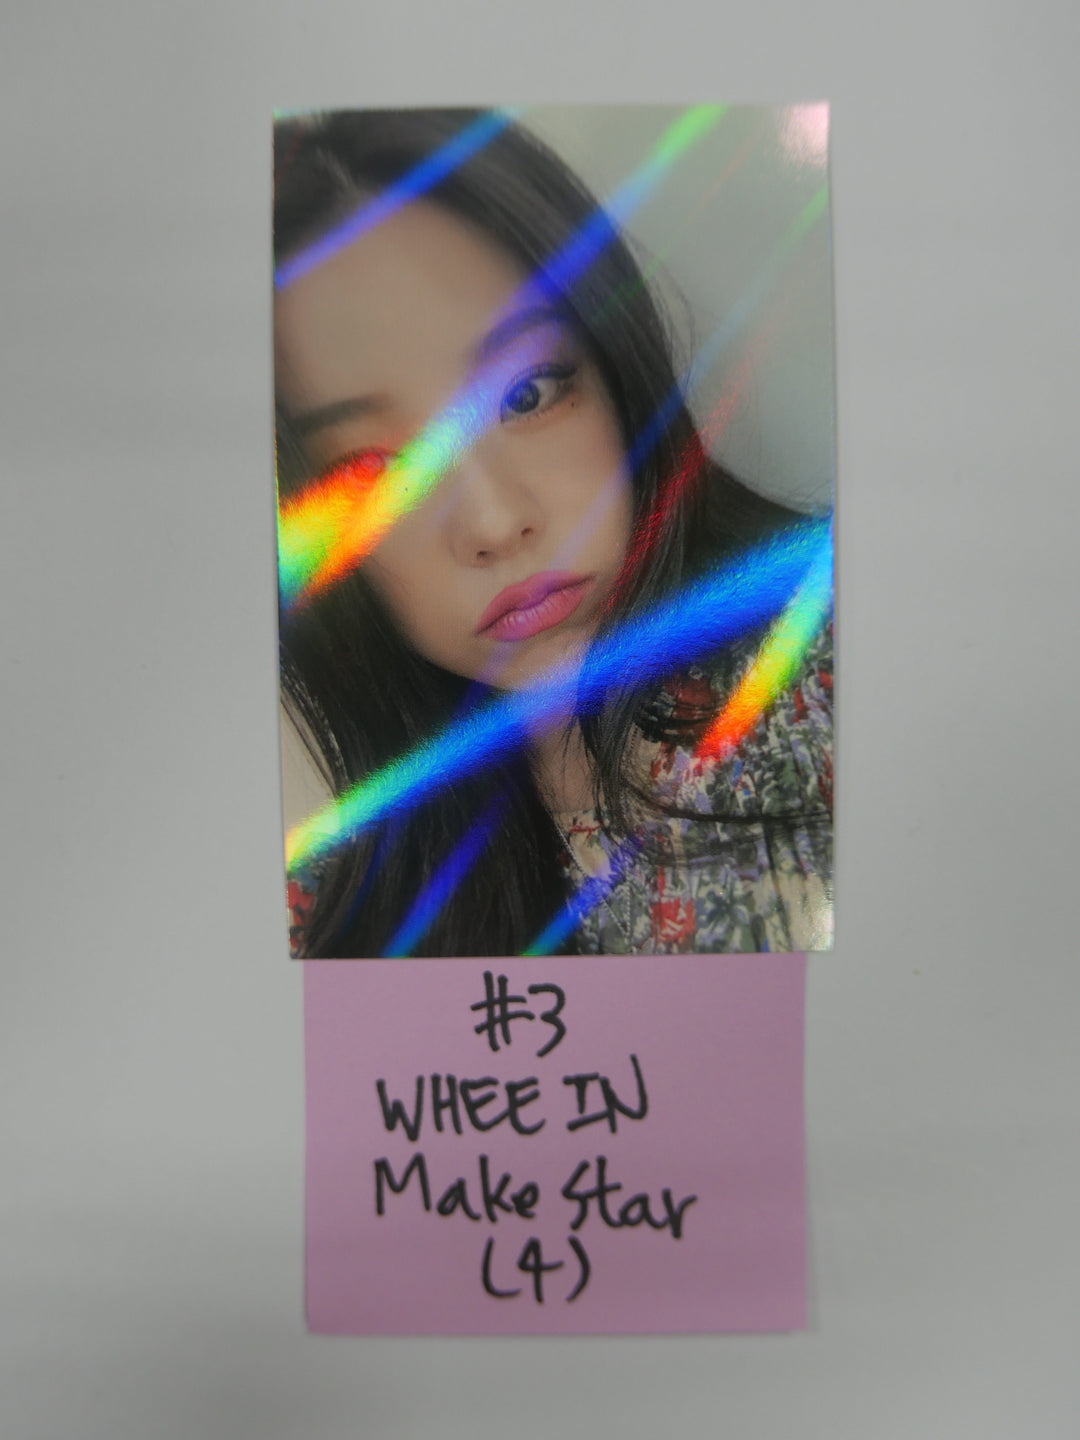 Mamamoo 'WAW' - Make star Fan Sign Event Photocard